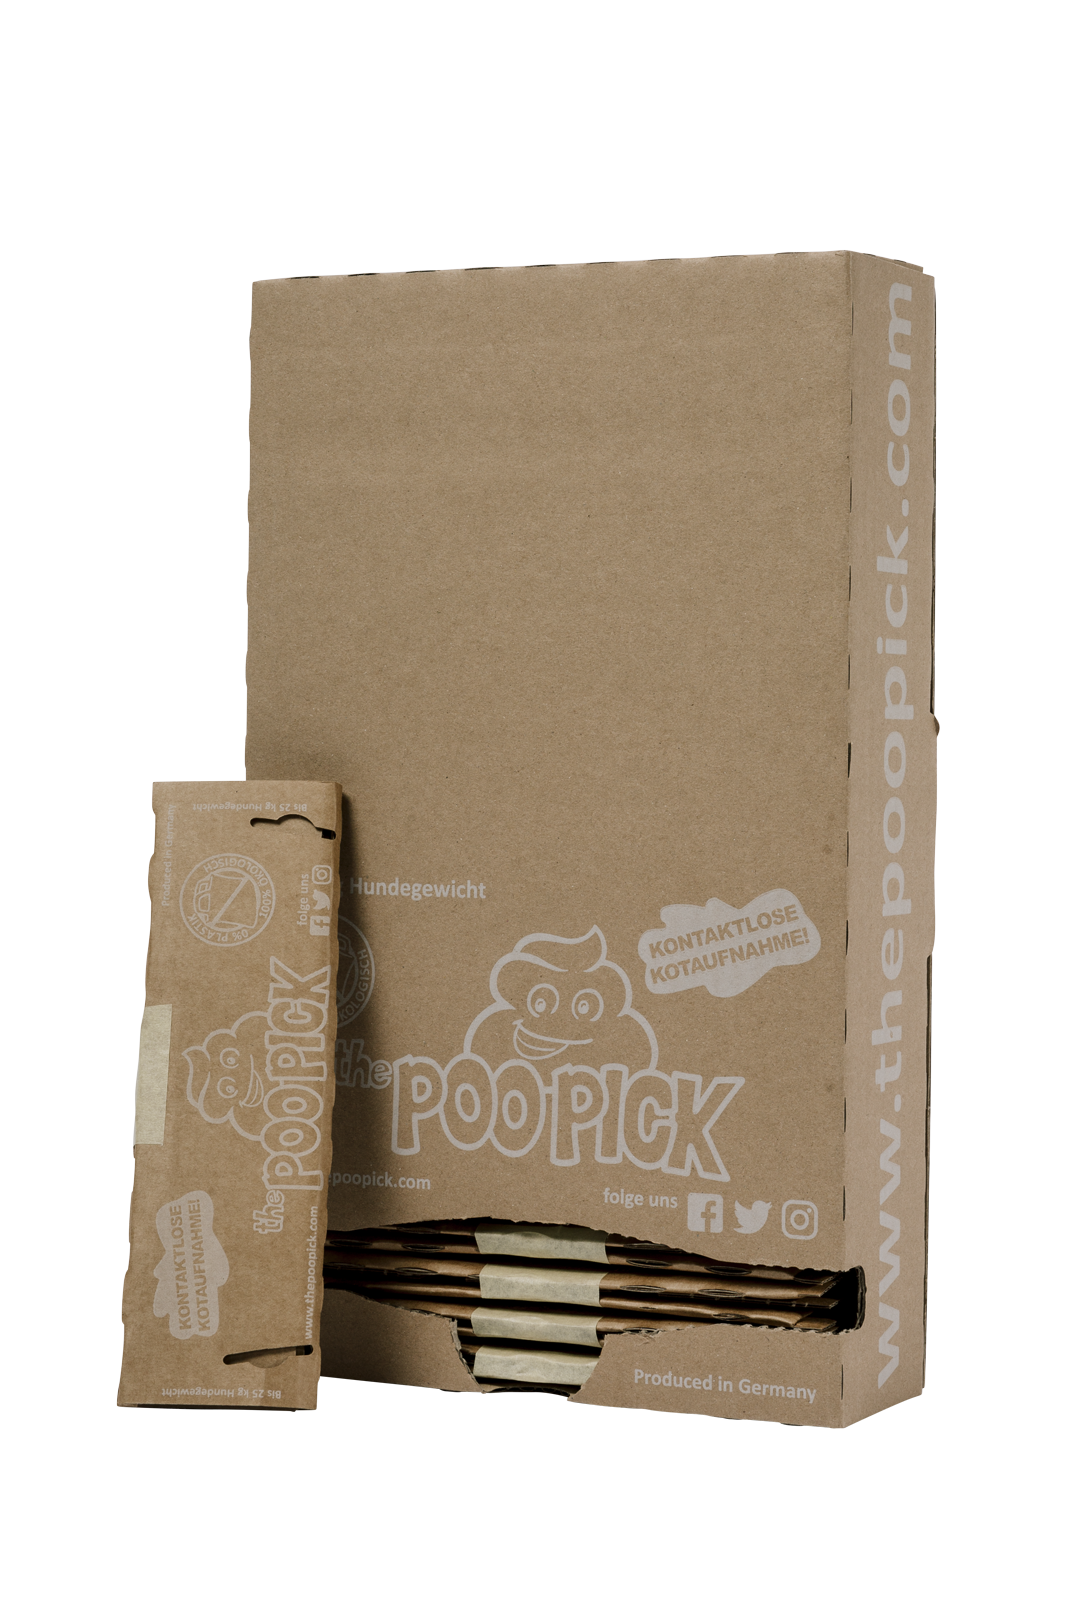 Poopick Box Premium bis 25kg